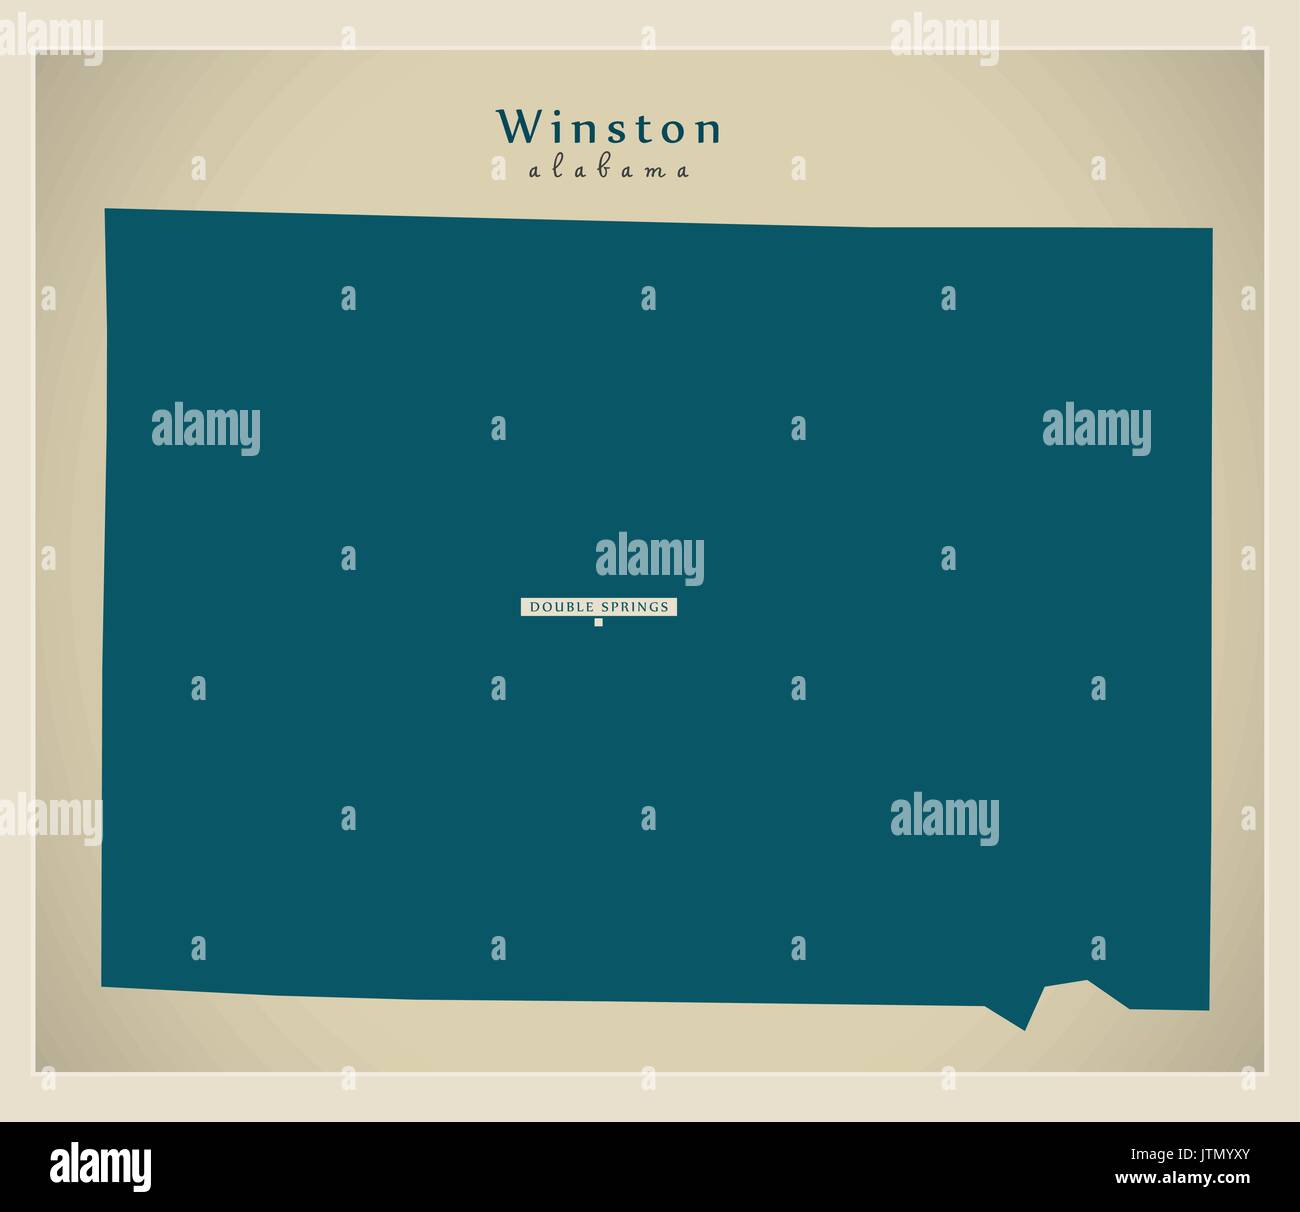 Mappa moderno - Winston Alabama county USA illustrazione Illustrazione Vettoriale